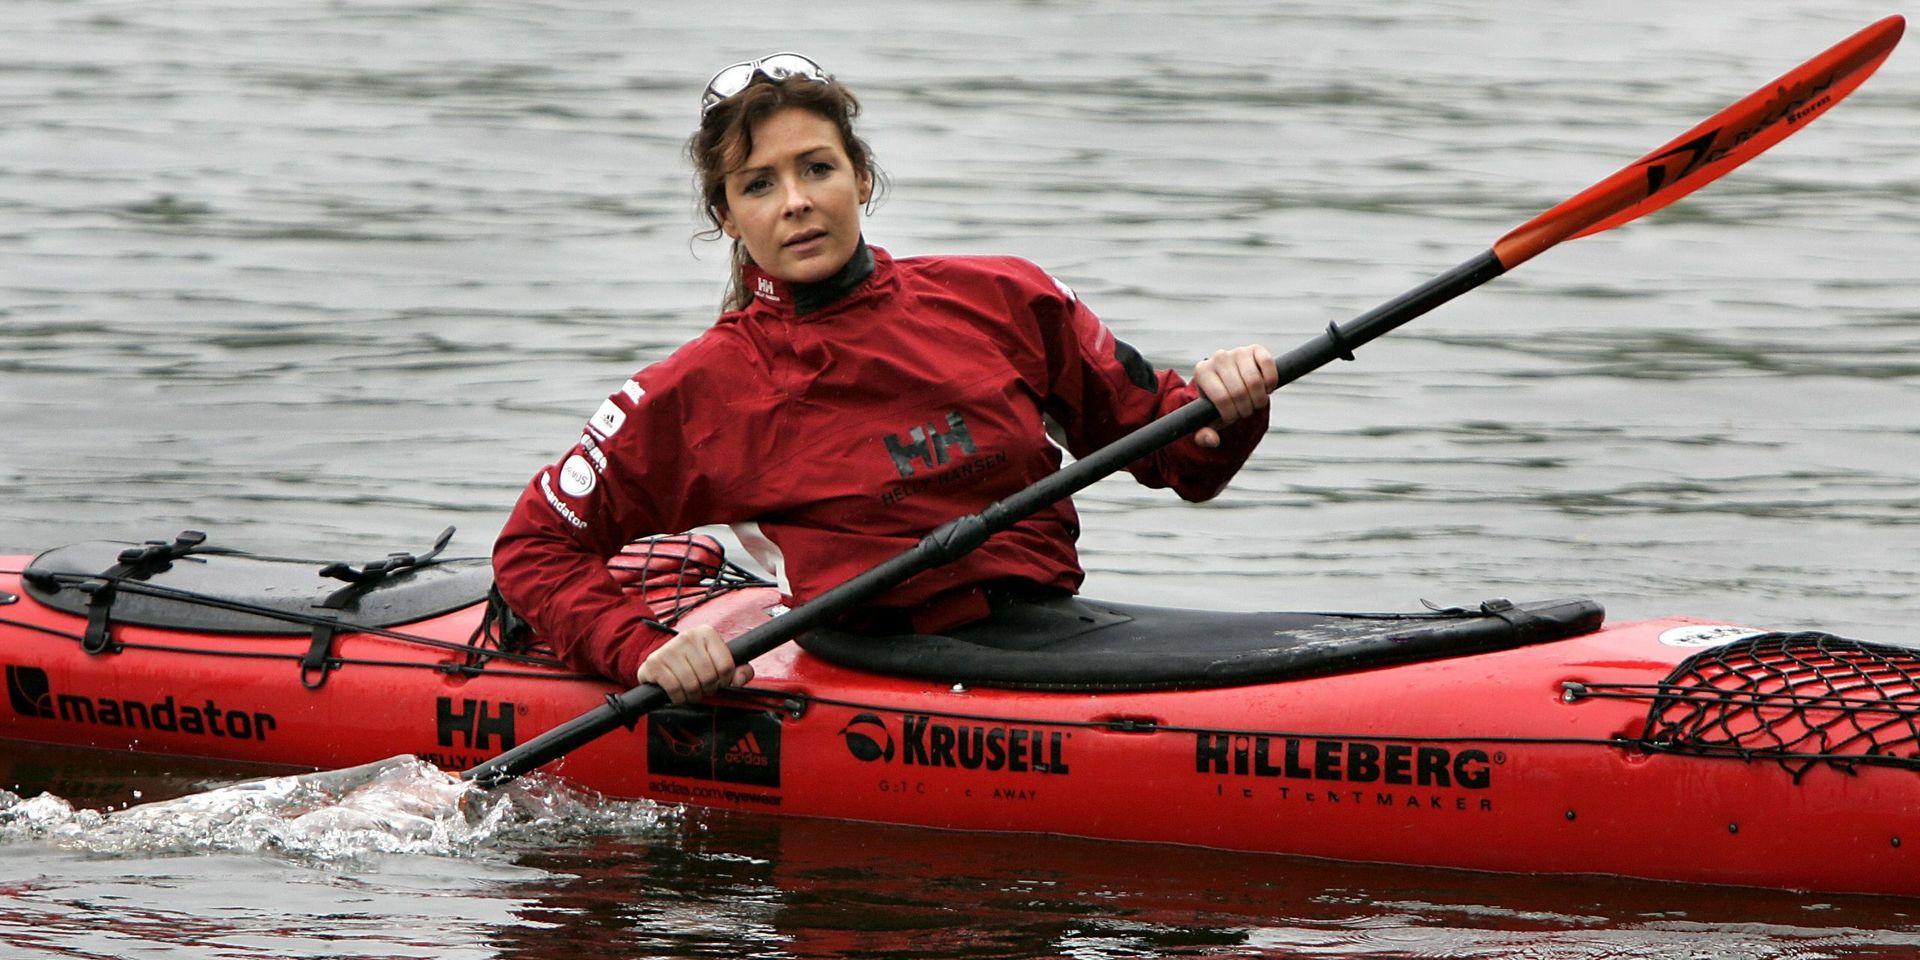 2005 tog sig Renata Chlumska med kanot och cykel runt de 48 nedersta staterna av USA på 439 dagar. 